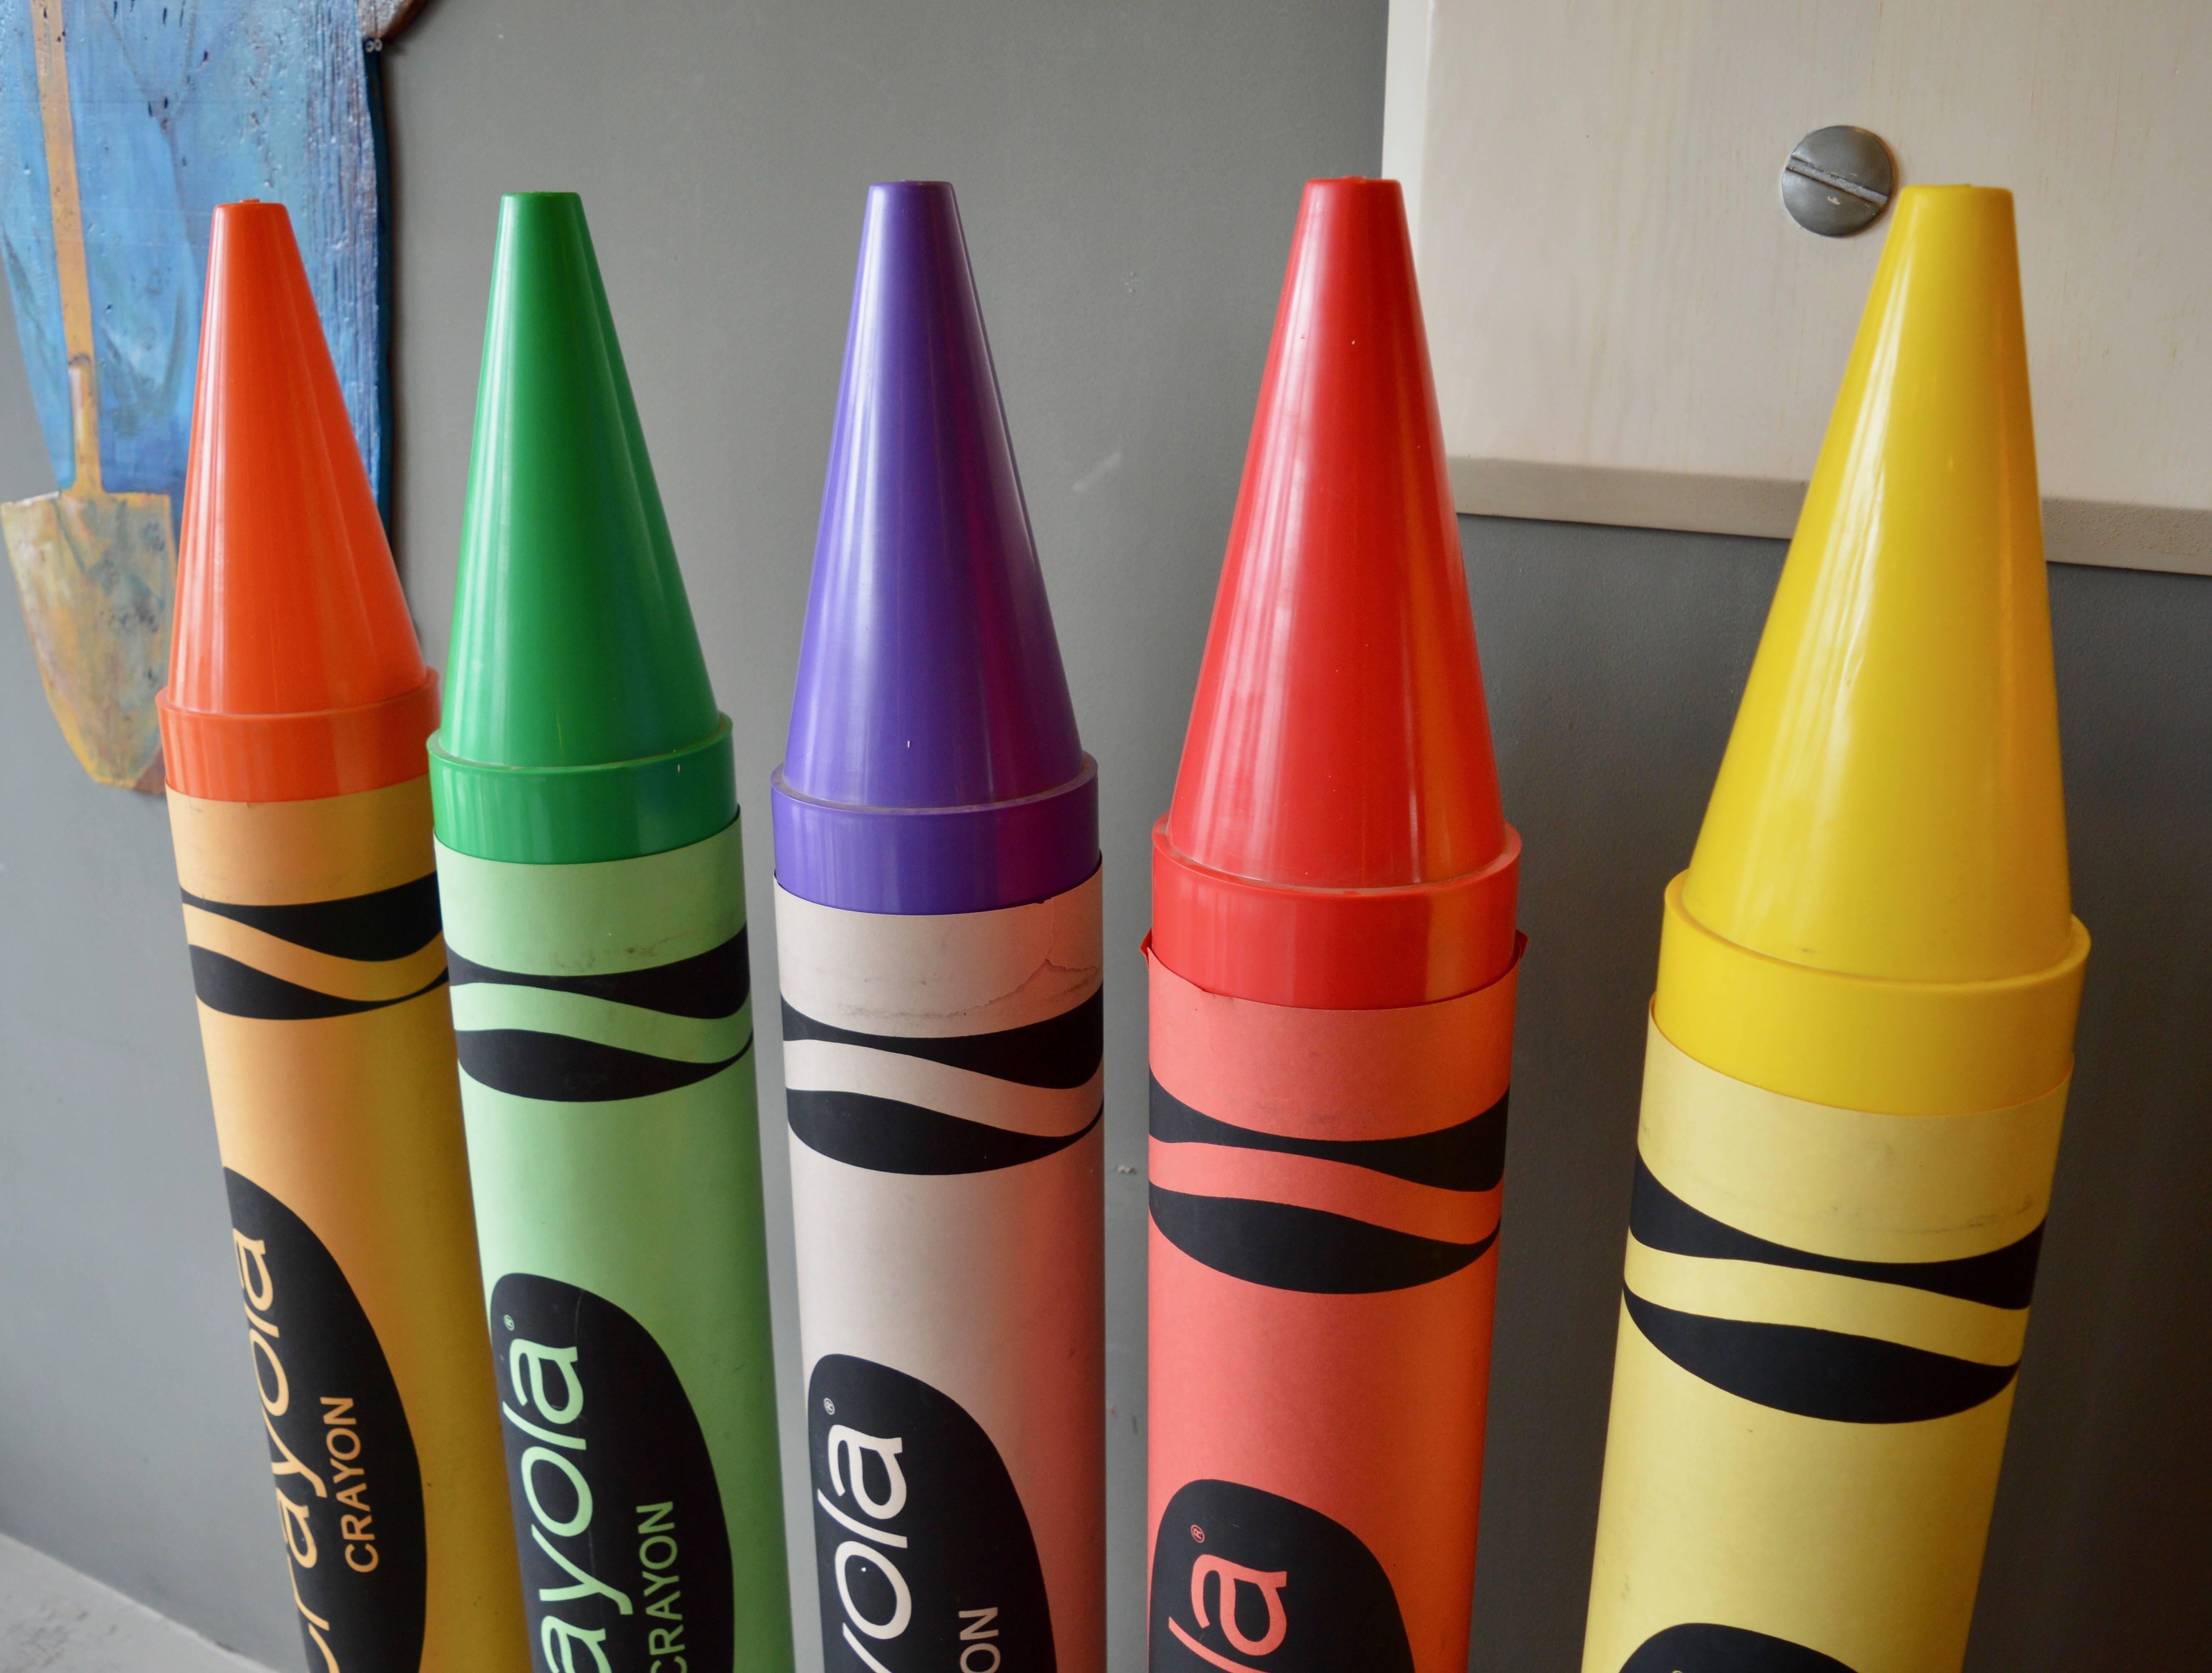 Américain Ensemble monumental de cinq crayons Crayola